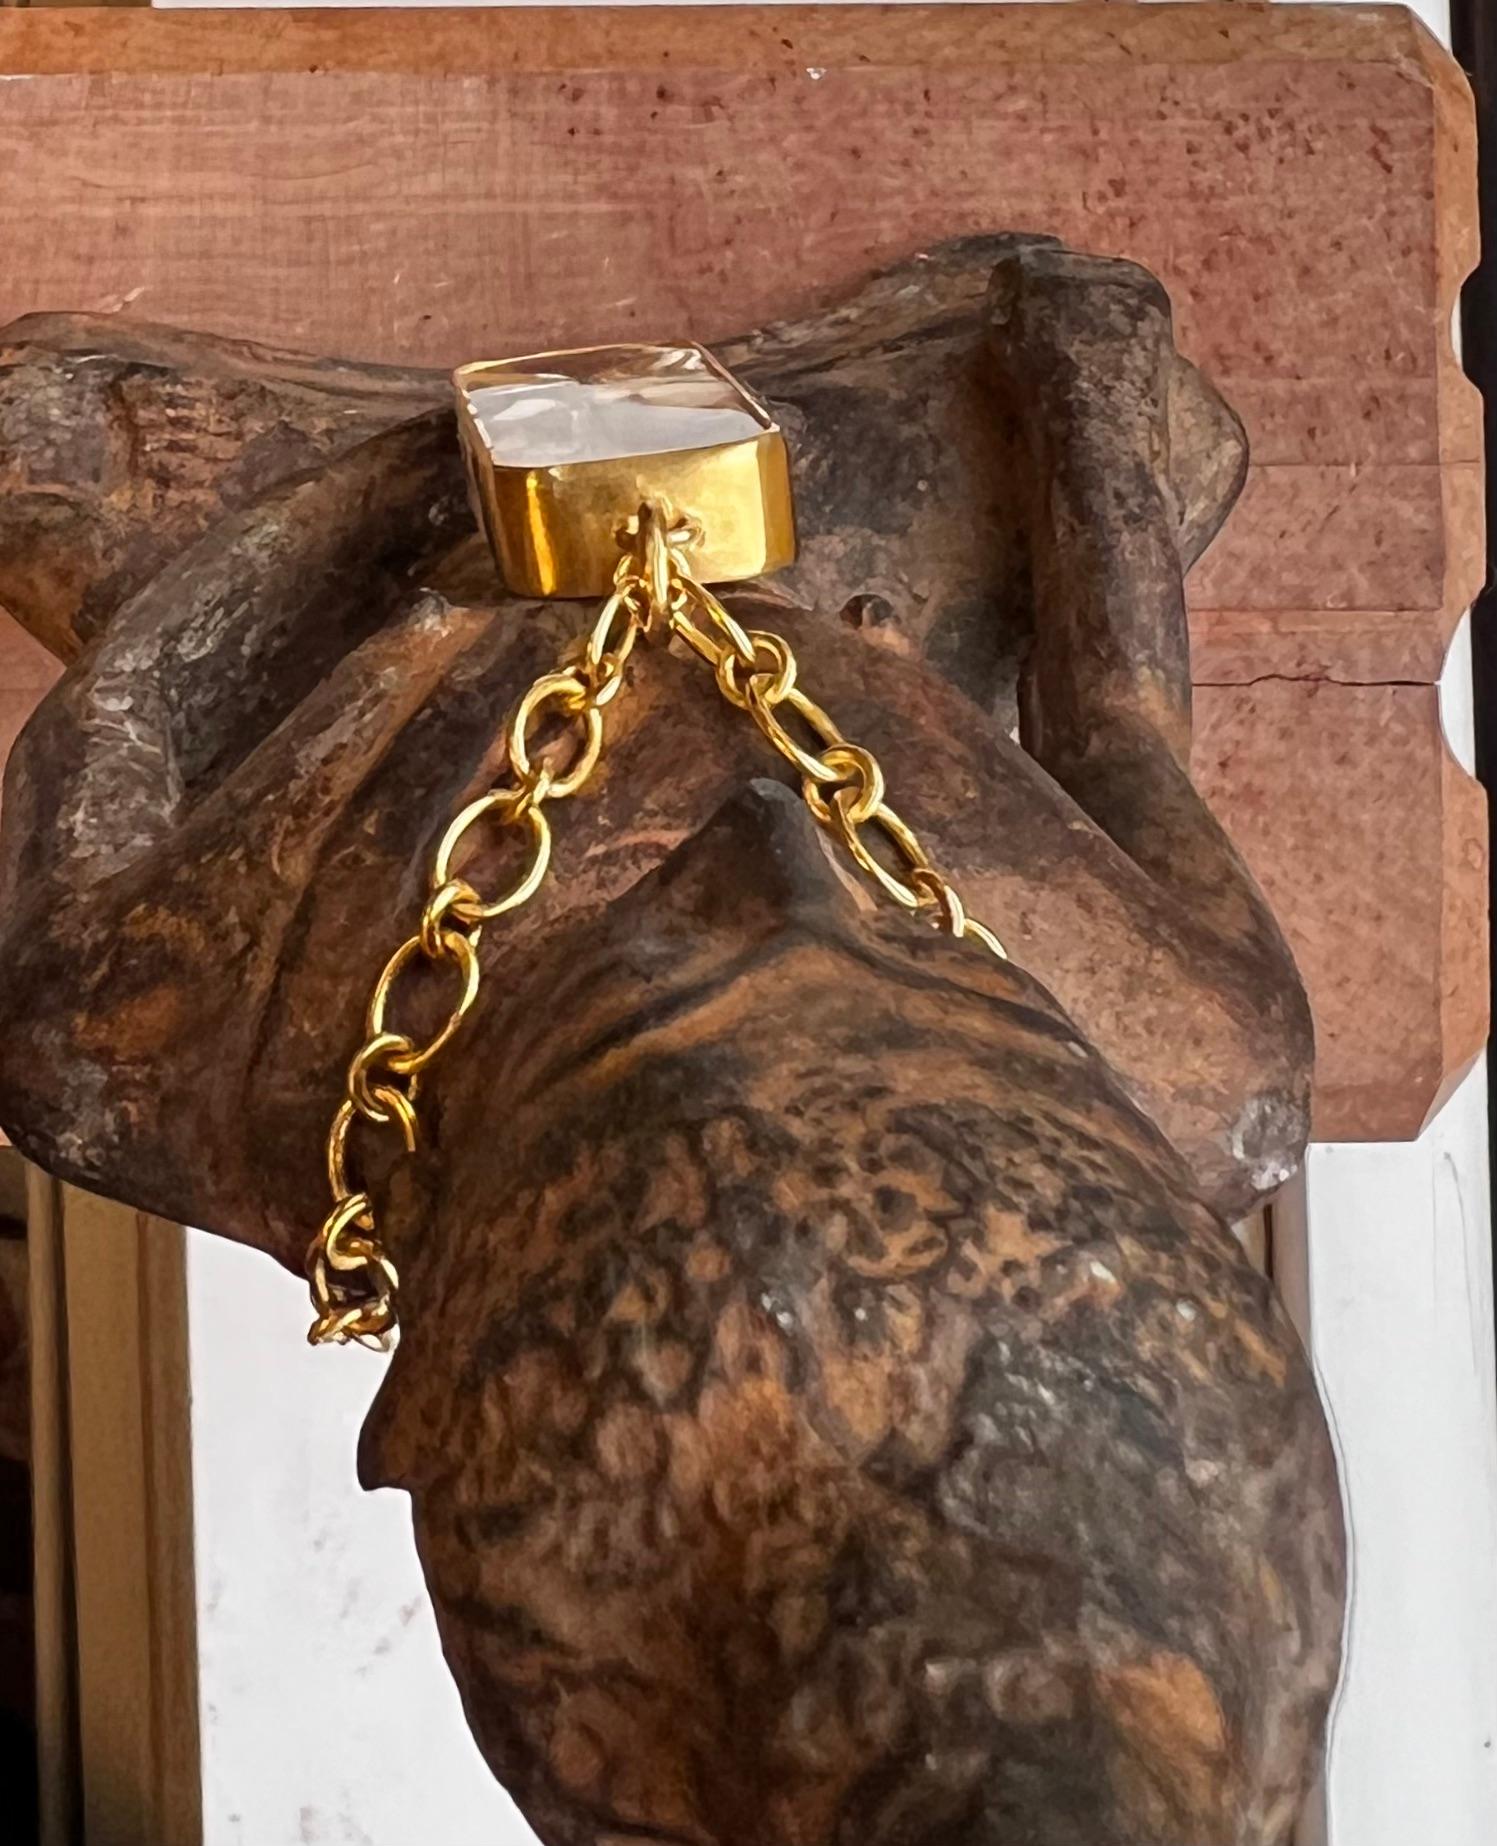 22 karat gold chain